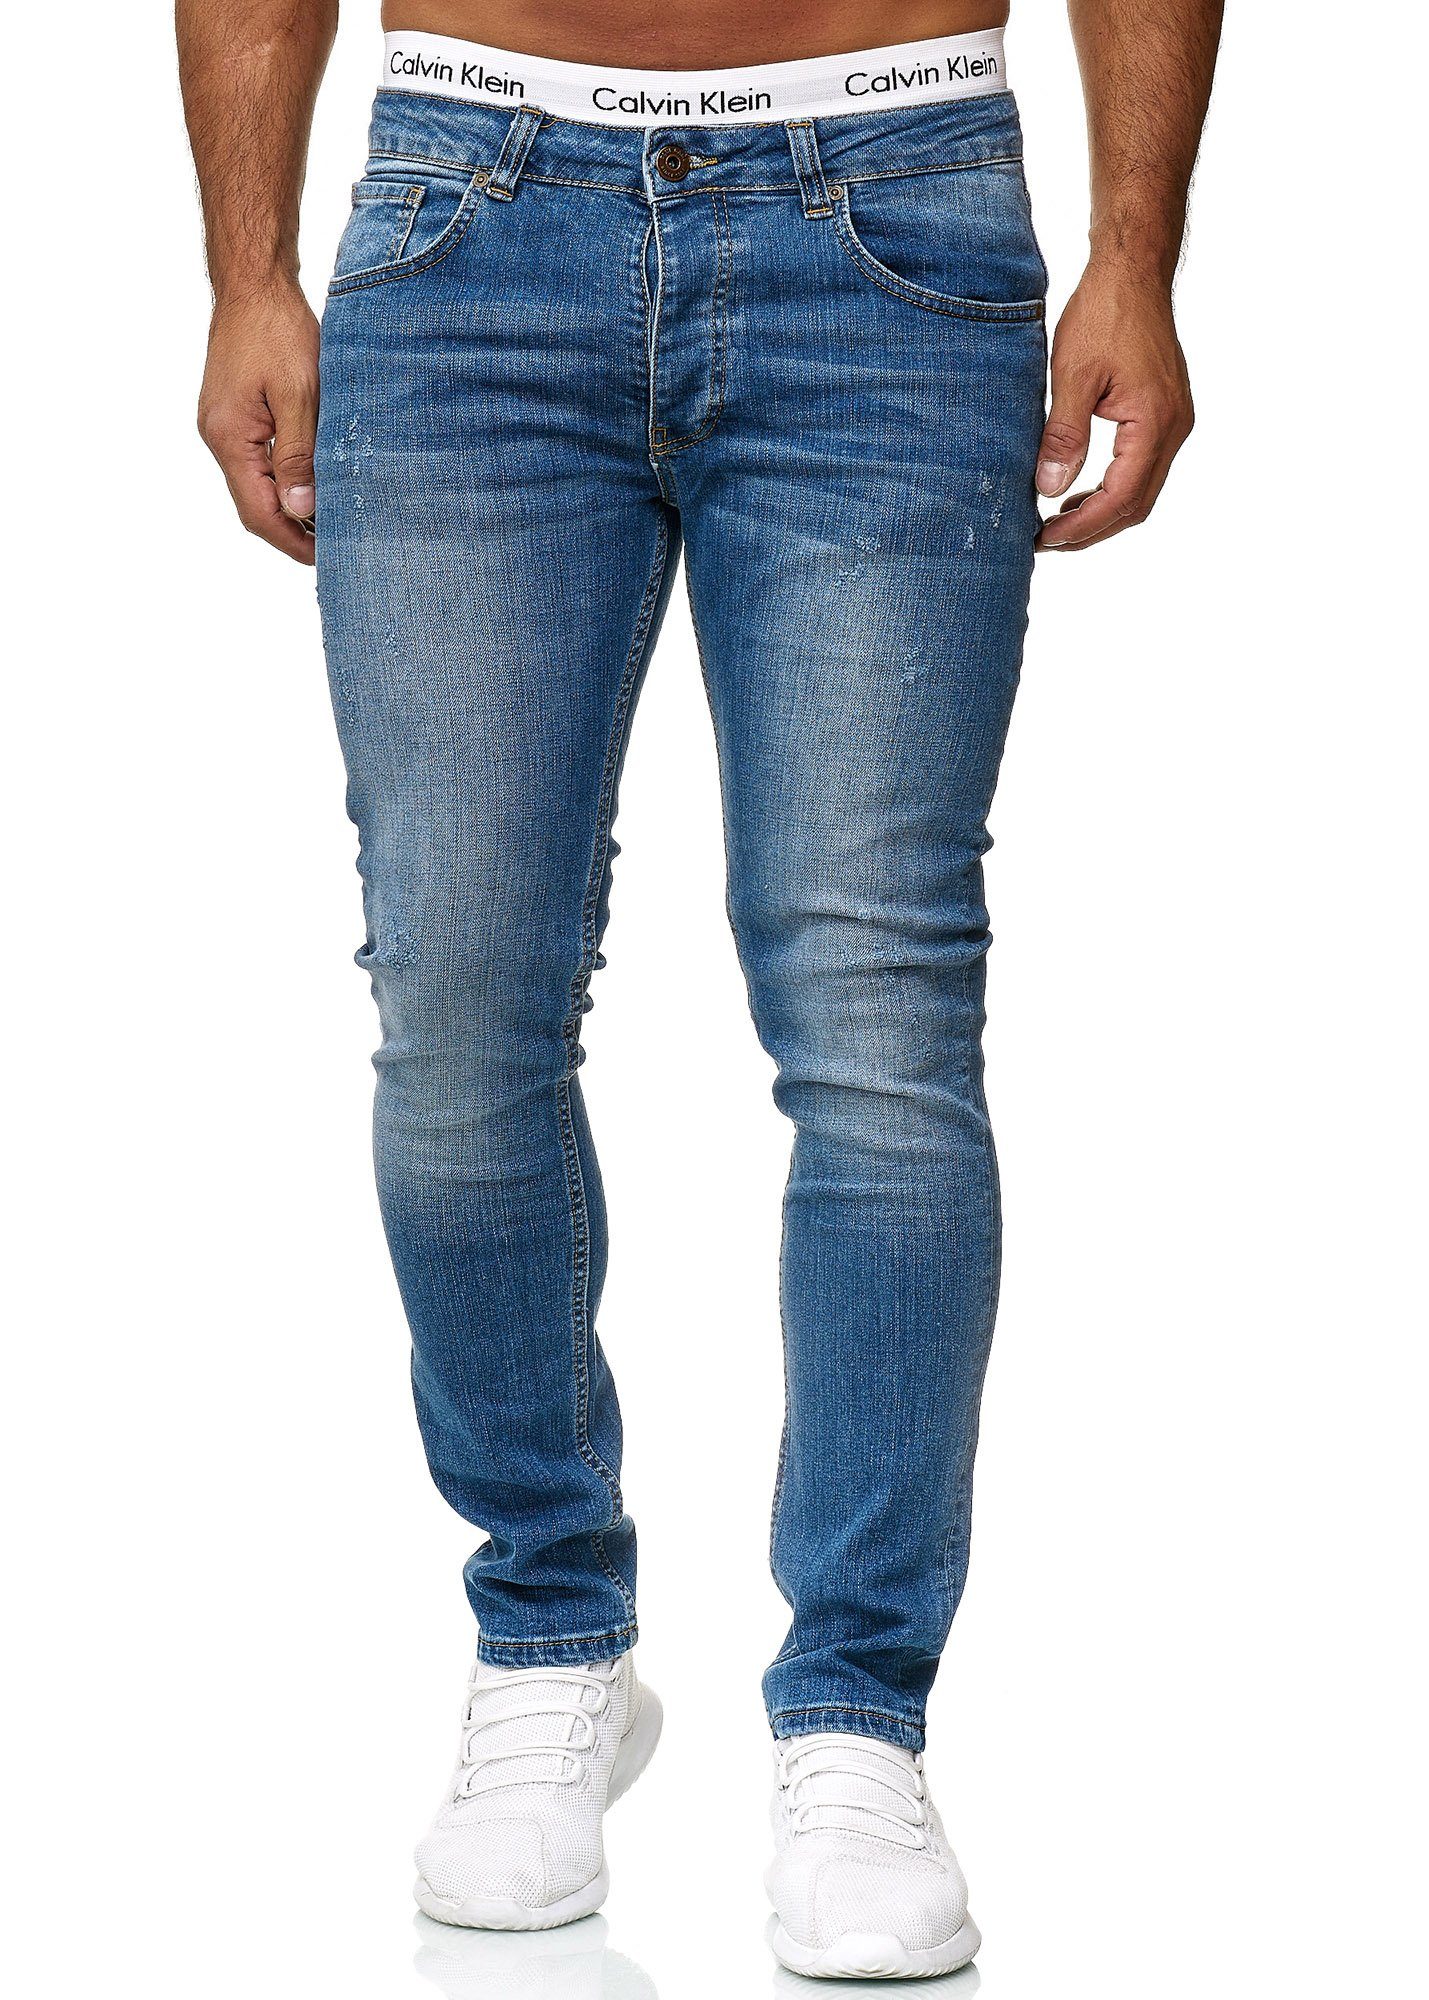 601 Regular Designer Jeans Used Basic Fit Skinny-fit-Jeans Blue Code47 Skinny Code47 Herren Hose Old Jeanshose